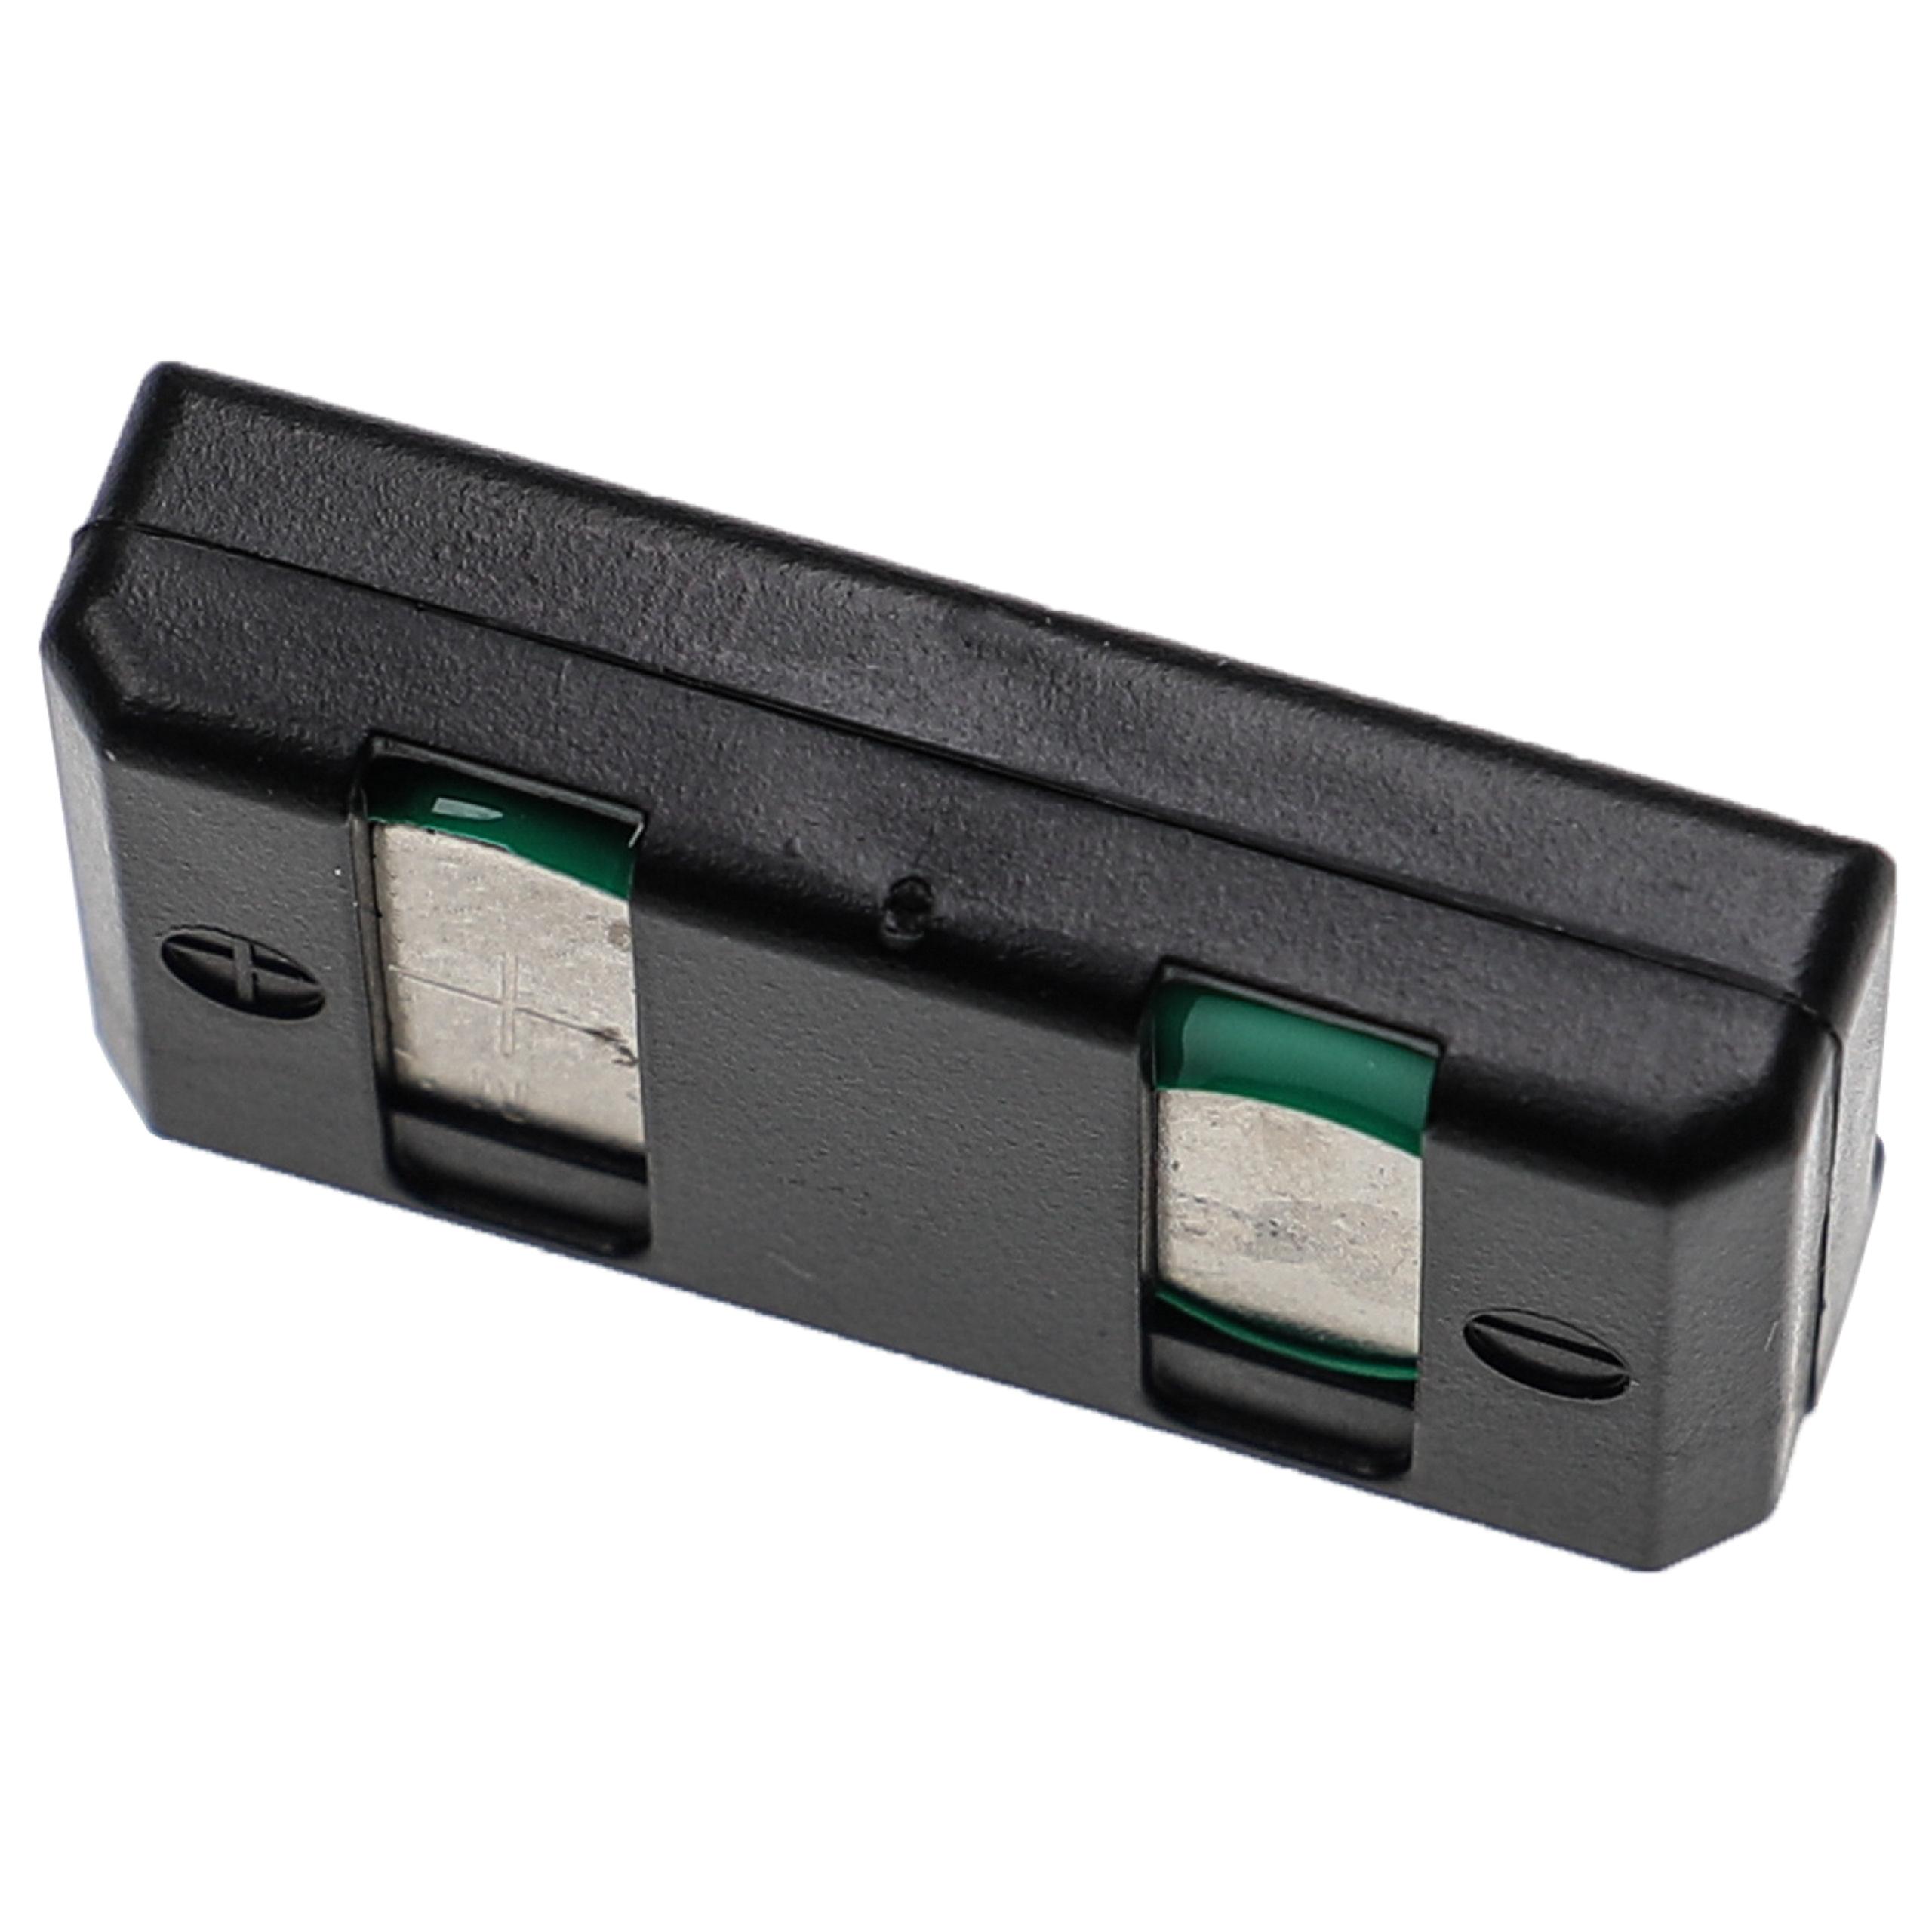 Batteria per auricolari cuffie wireless sostituisce Sennheiser BA90, E90, E180 Sennheiser - 60mAh 2,4V NiMH